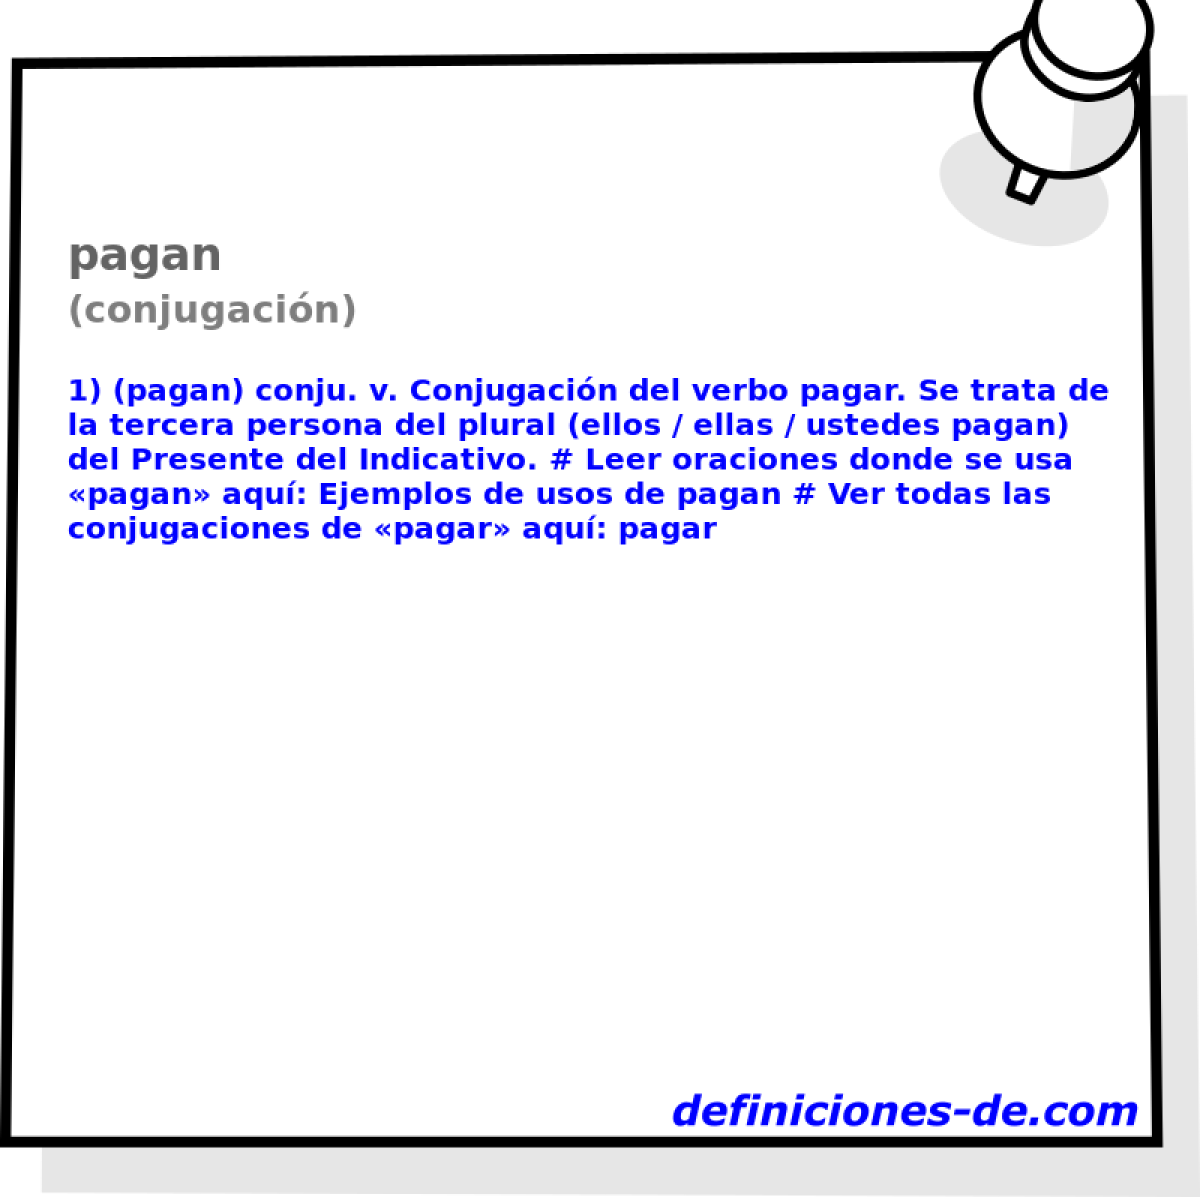 pagan (conjugacin)